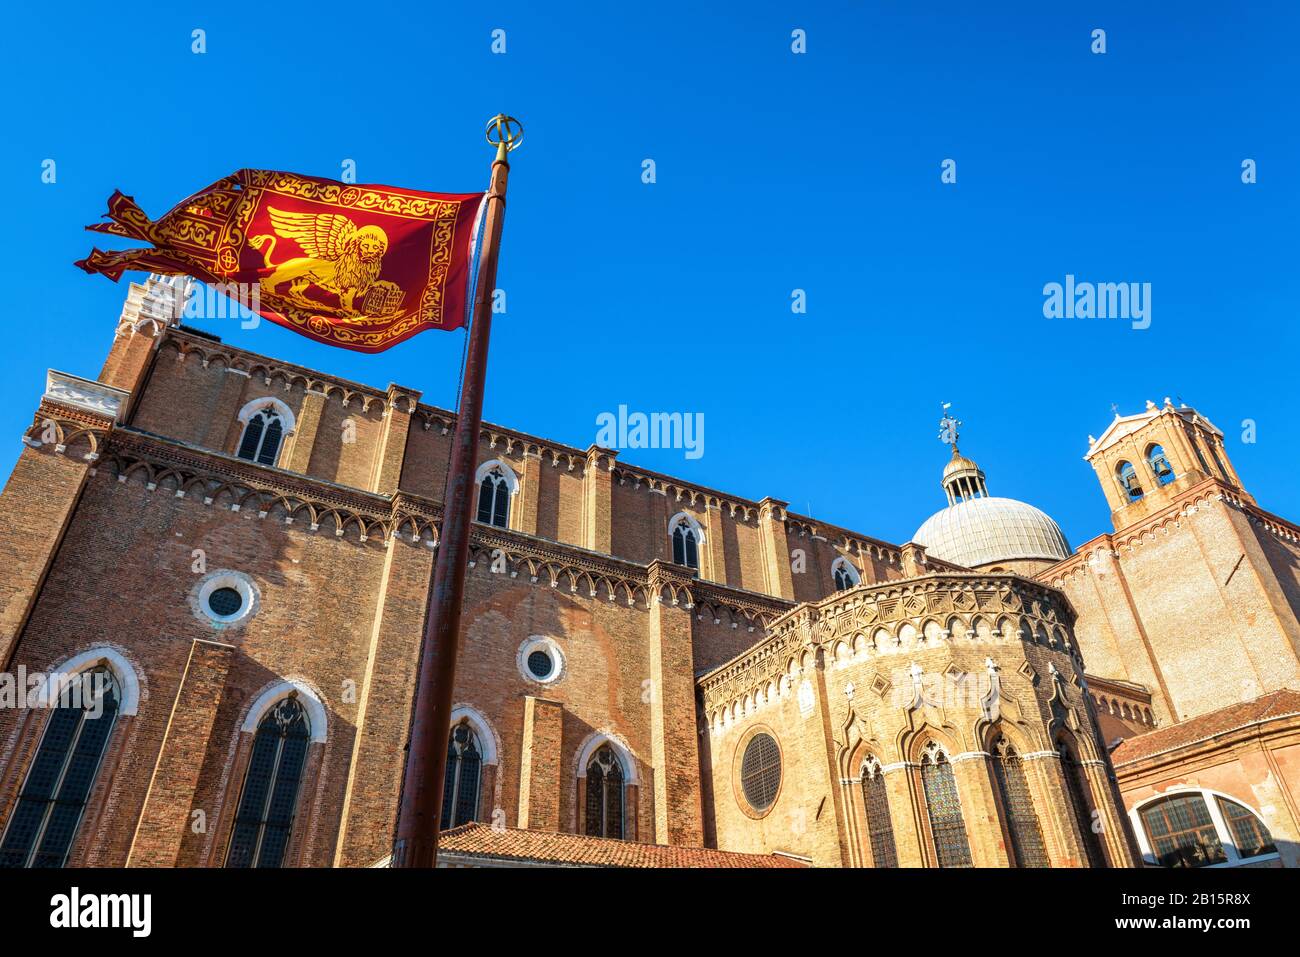 Bandera de Venecia cerca de la Basílica de San Giovanni e Paolo en Venecia, Italia. Esta antigua iglesia es uno de los principales monumentos de Venecia. Bandera roja veneciana w Foto de stock